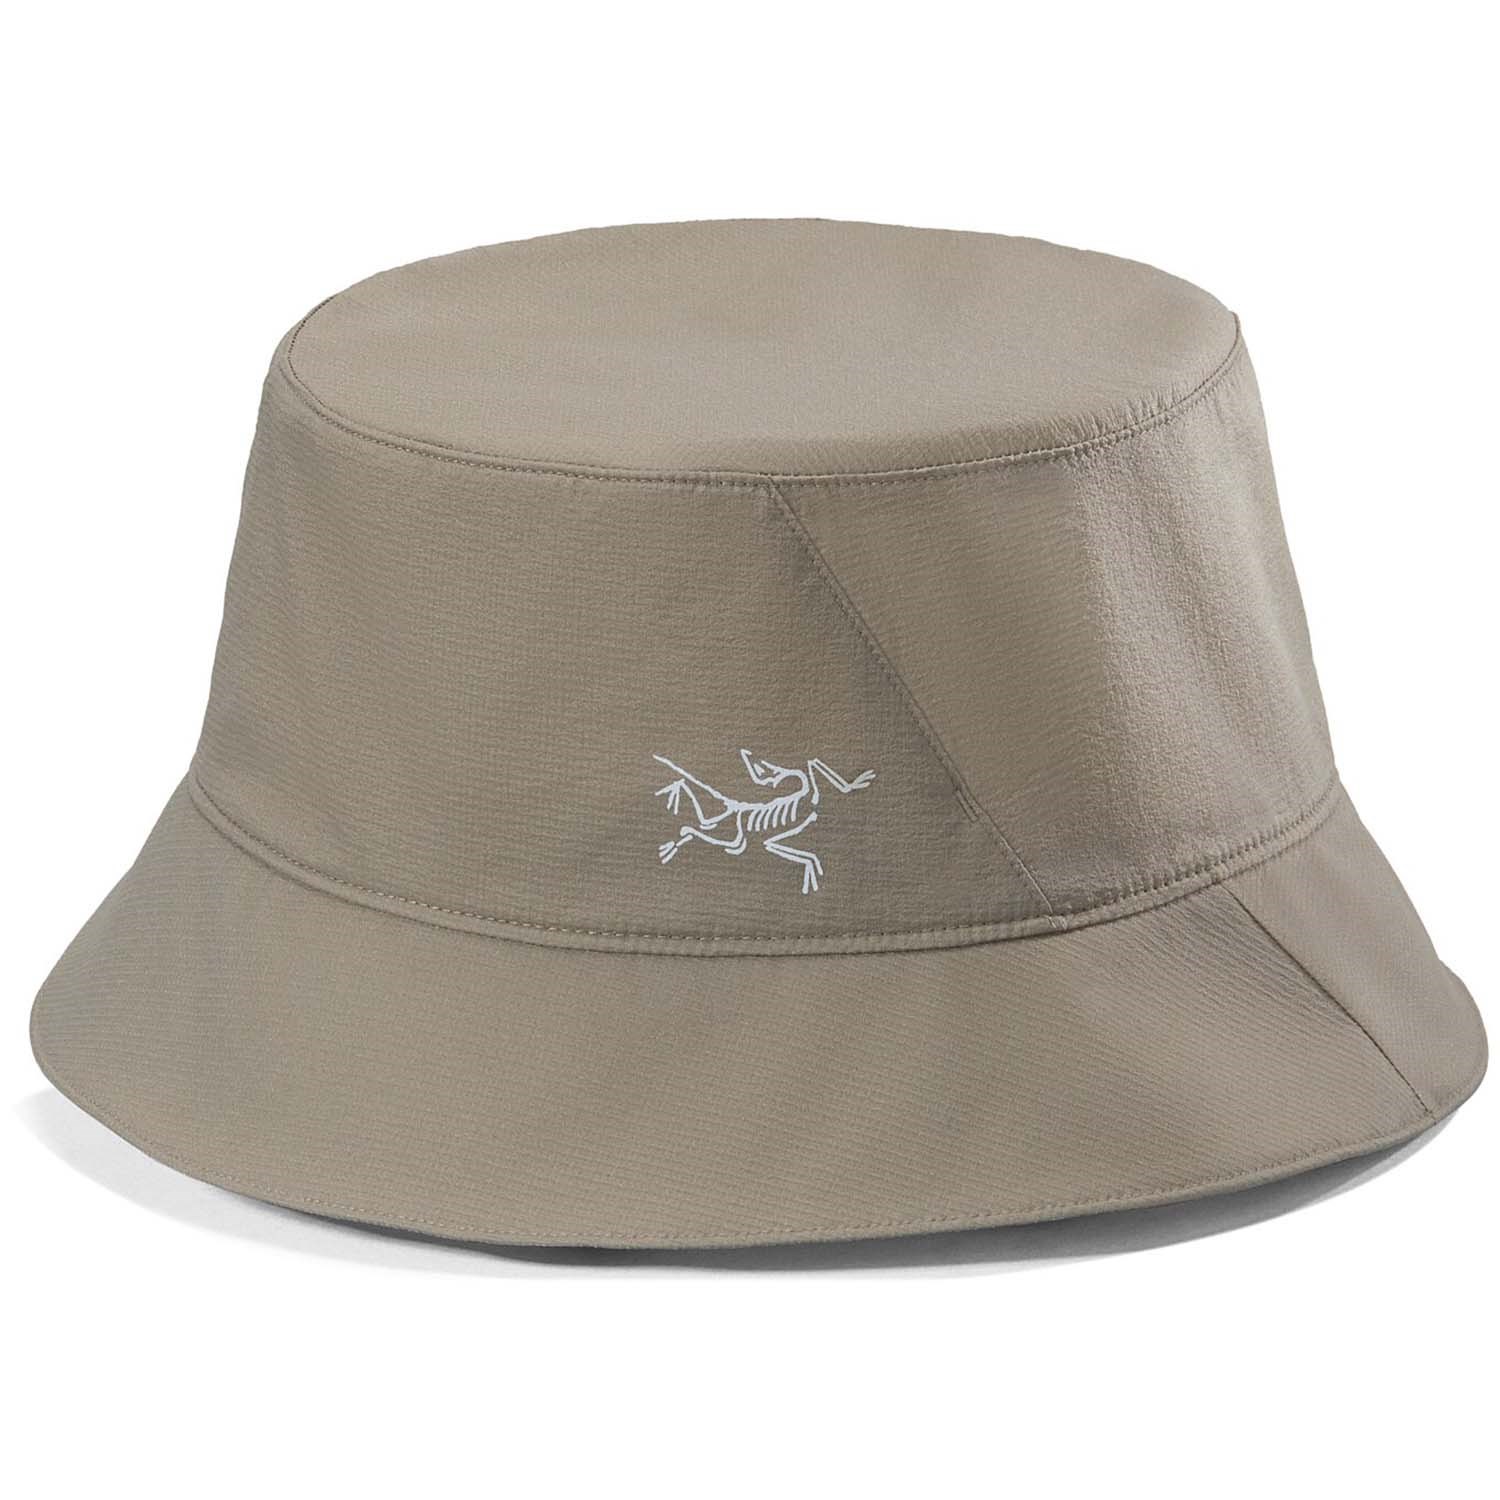 FCS Essential Surf Bucket Hat Warm Grey L